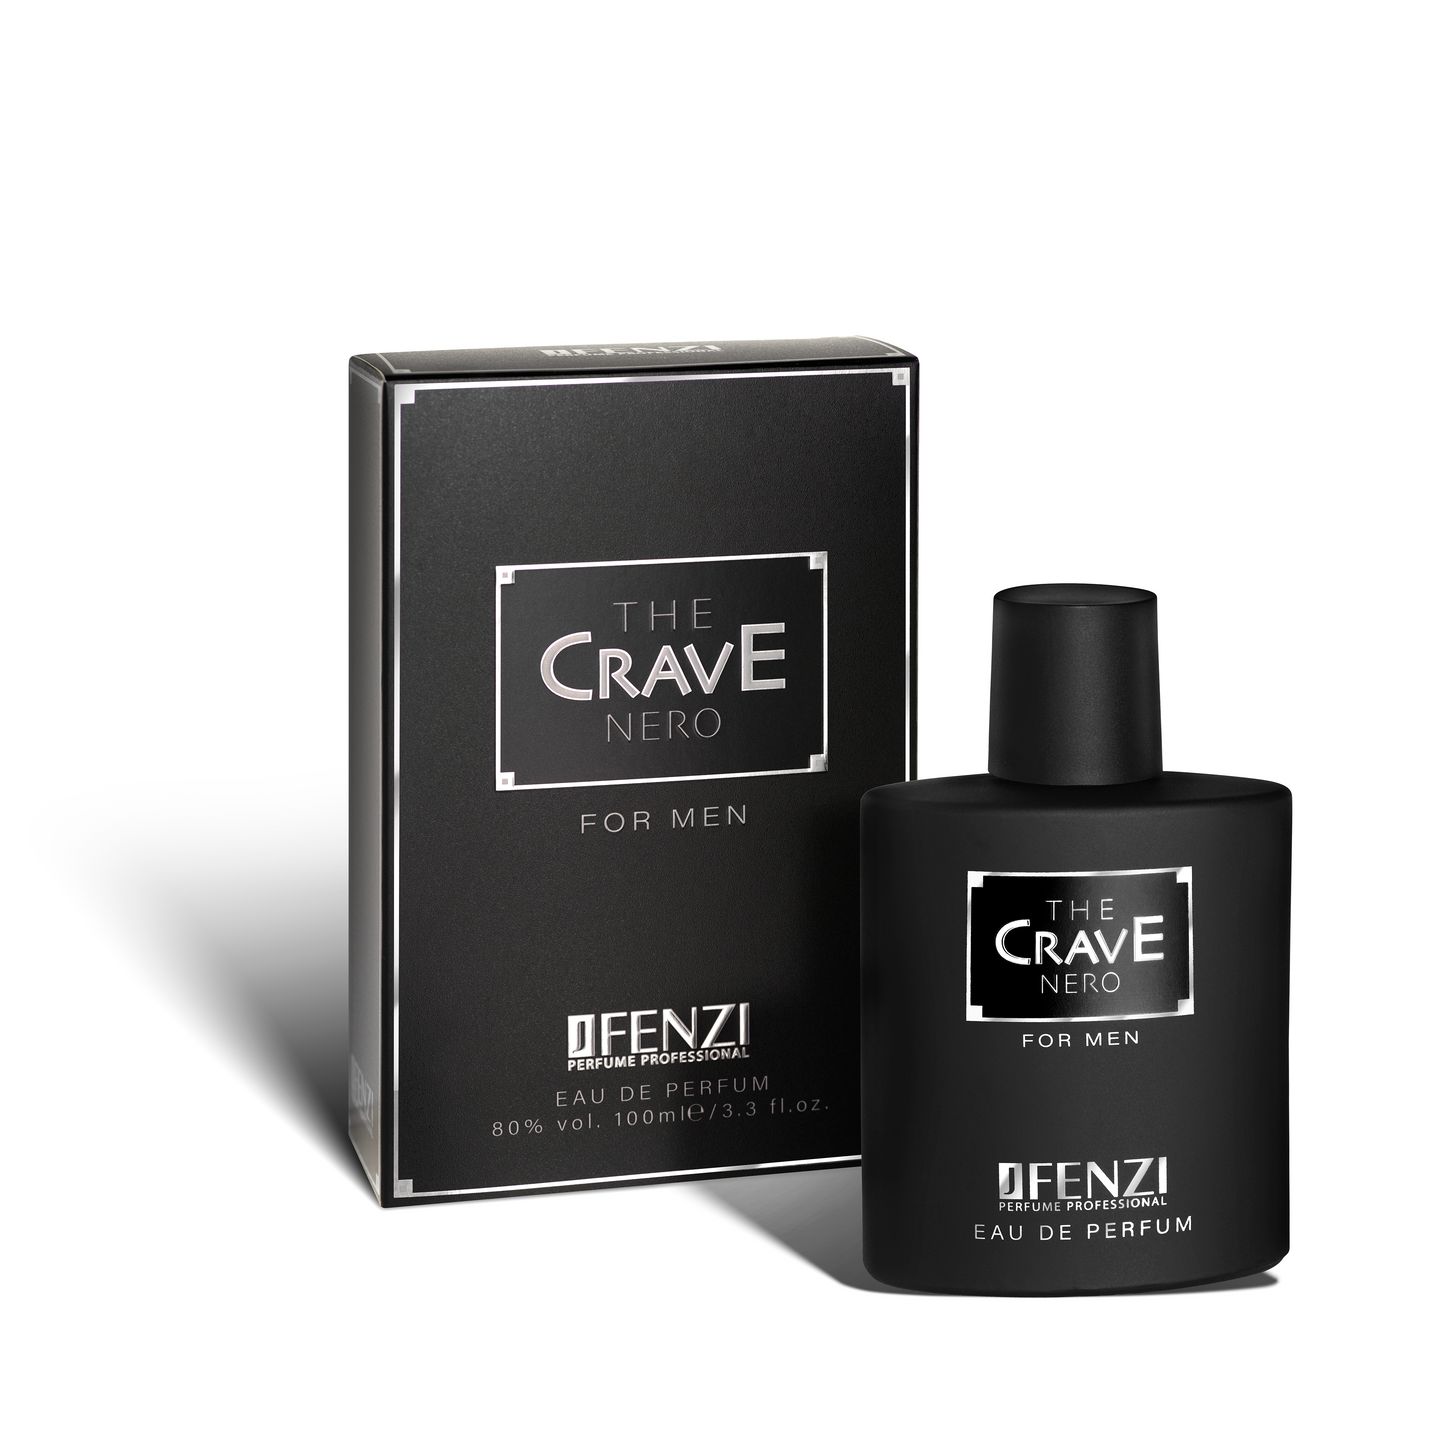 JFenzi The Crave Nero 100ml Eau De Parfum